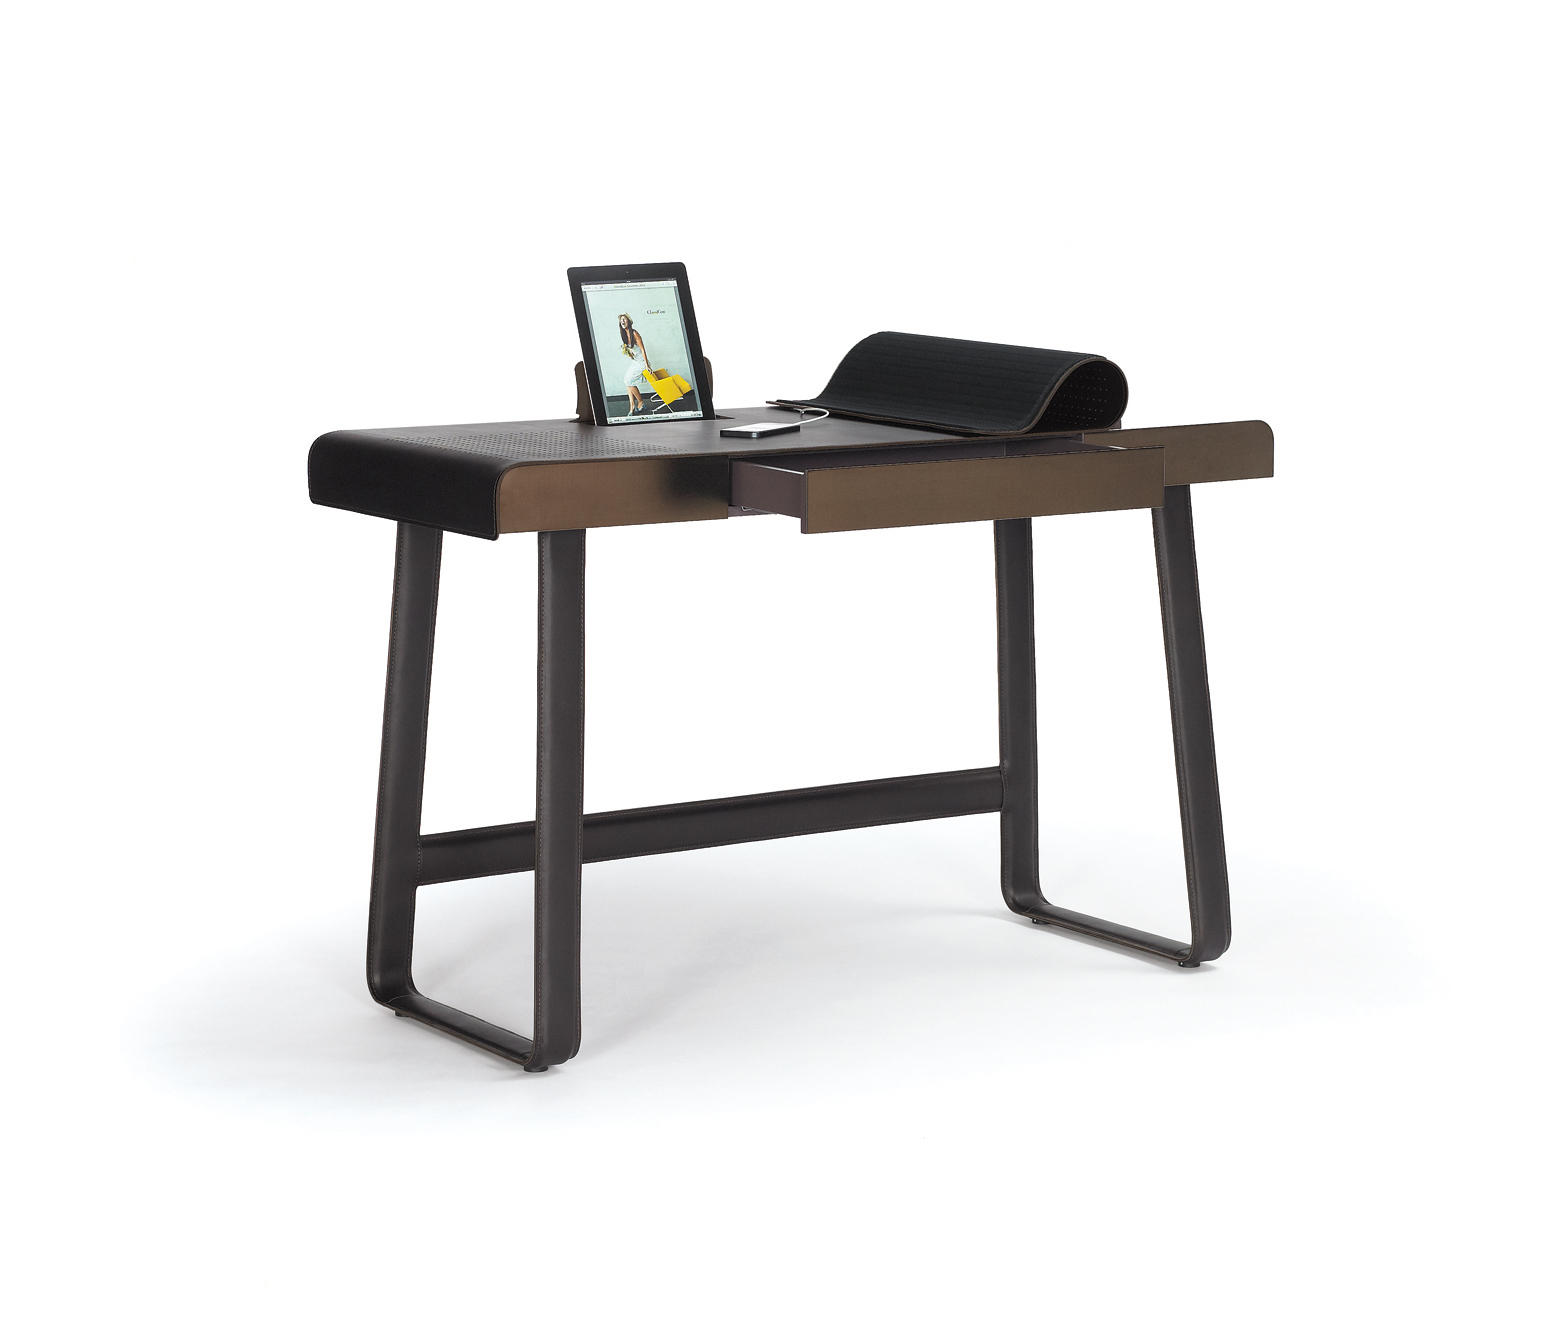 Письменный стол от Armani casa. B_Pegasus-Home-Desk-CLASSICON-GMBH-527360-relafa8cea8. Функциональный столик